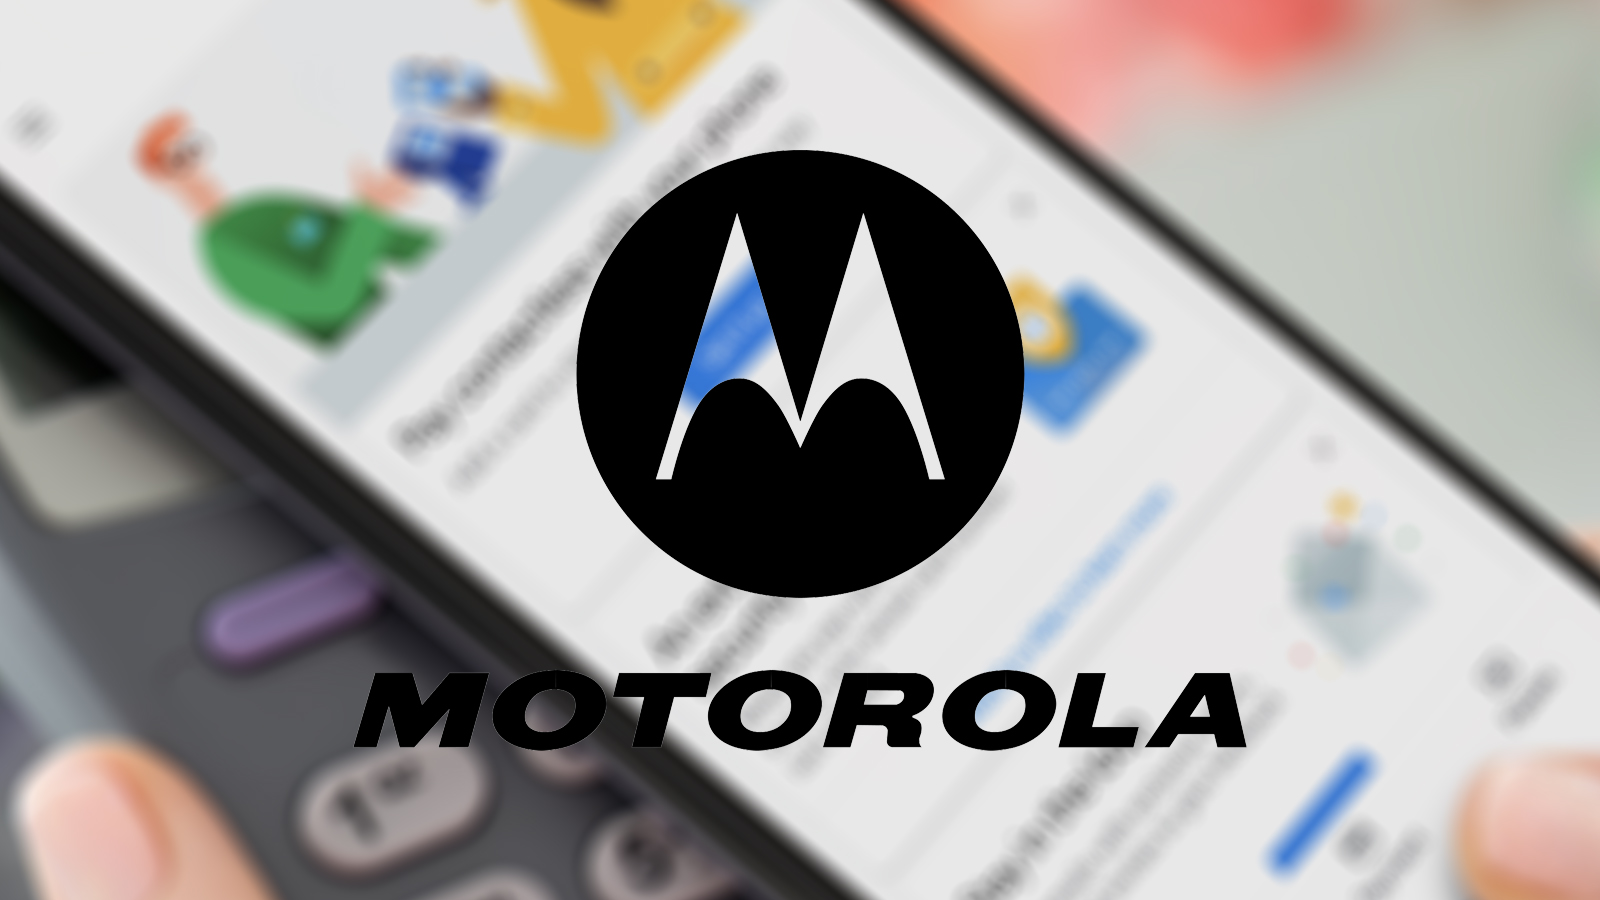 Er blijven weinig geheimen over rondom nieuw Motorola vlaggenschip